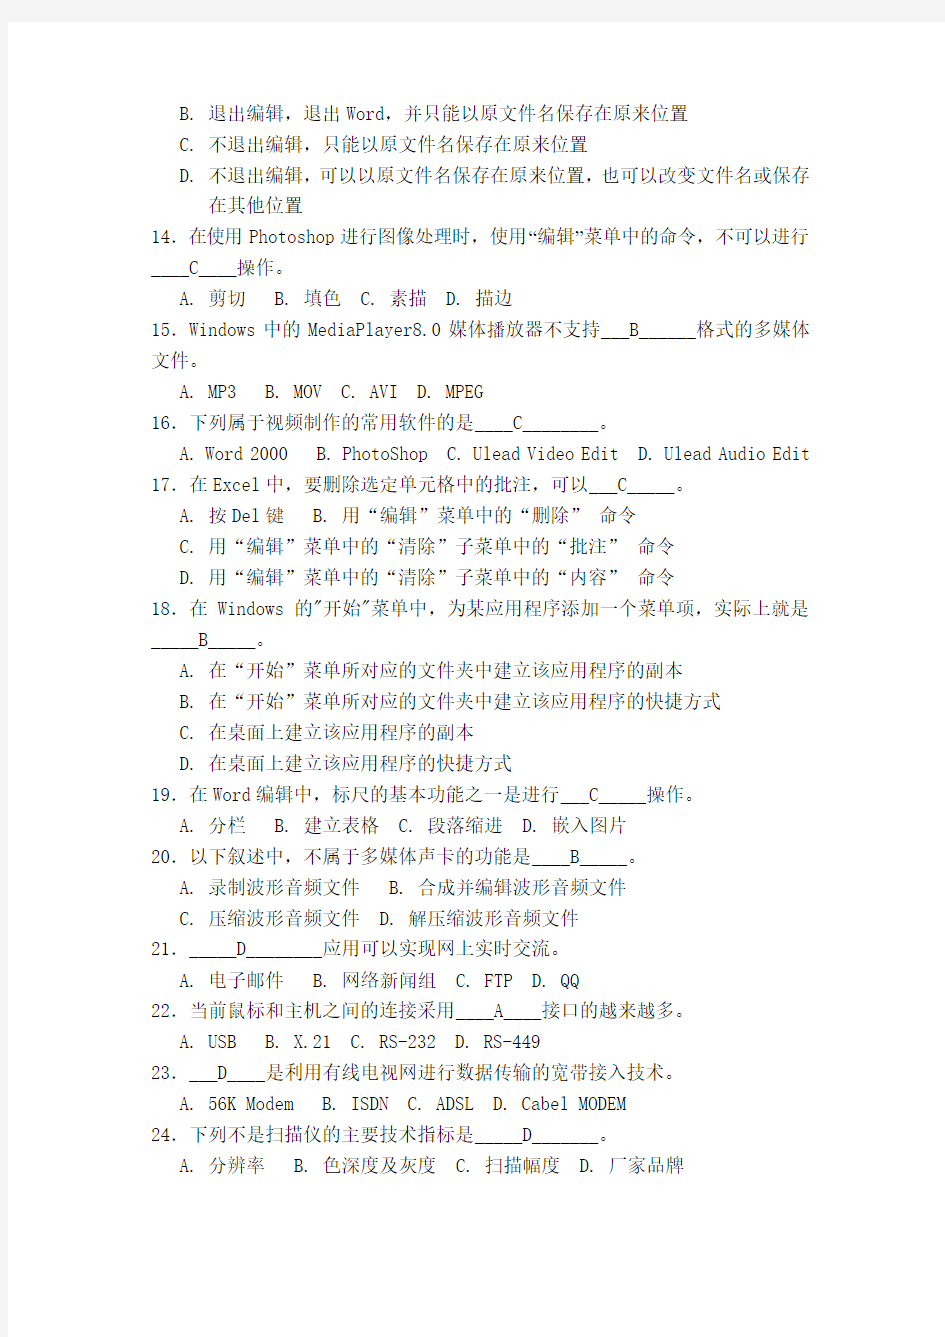 2008年上海市高等学校计算机一级考试概念题(A-H有答案)